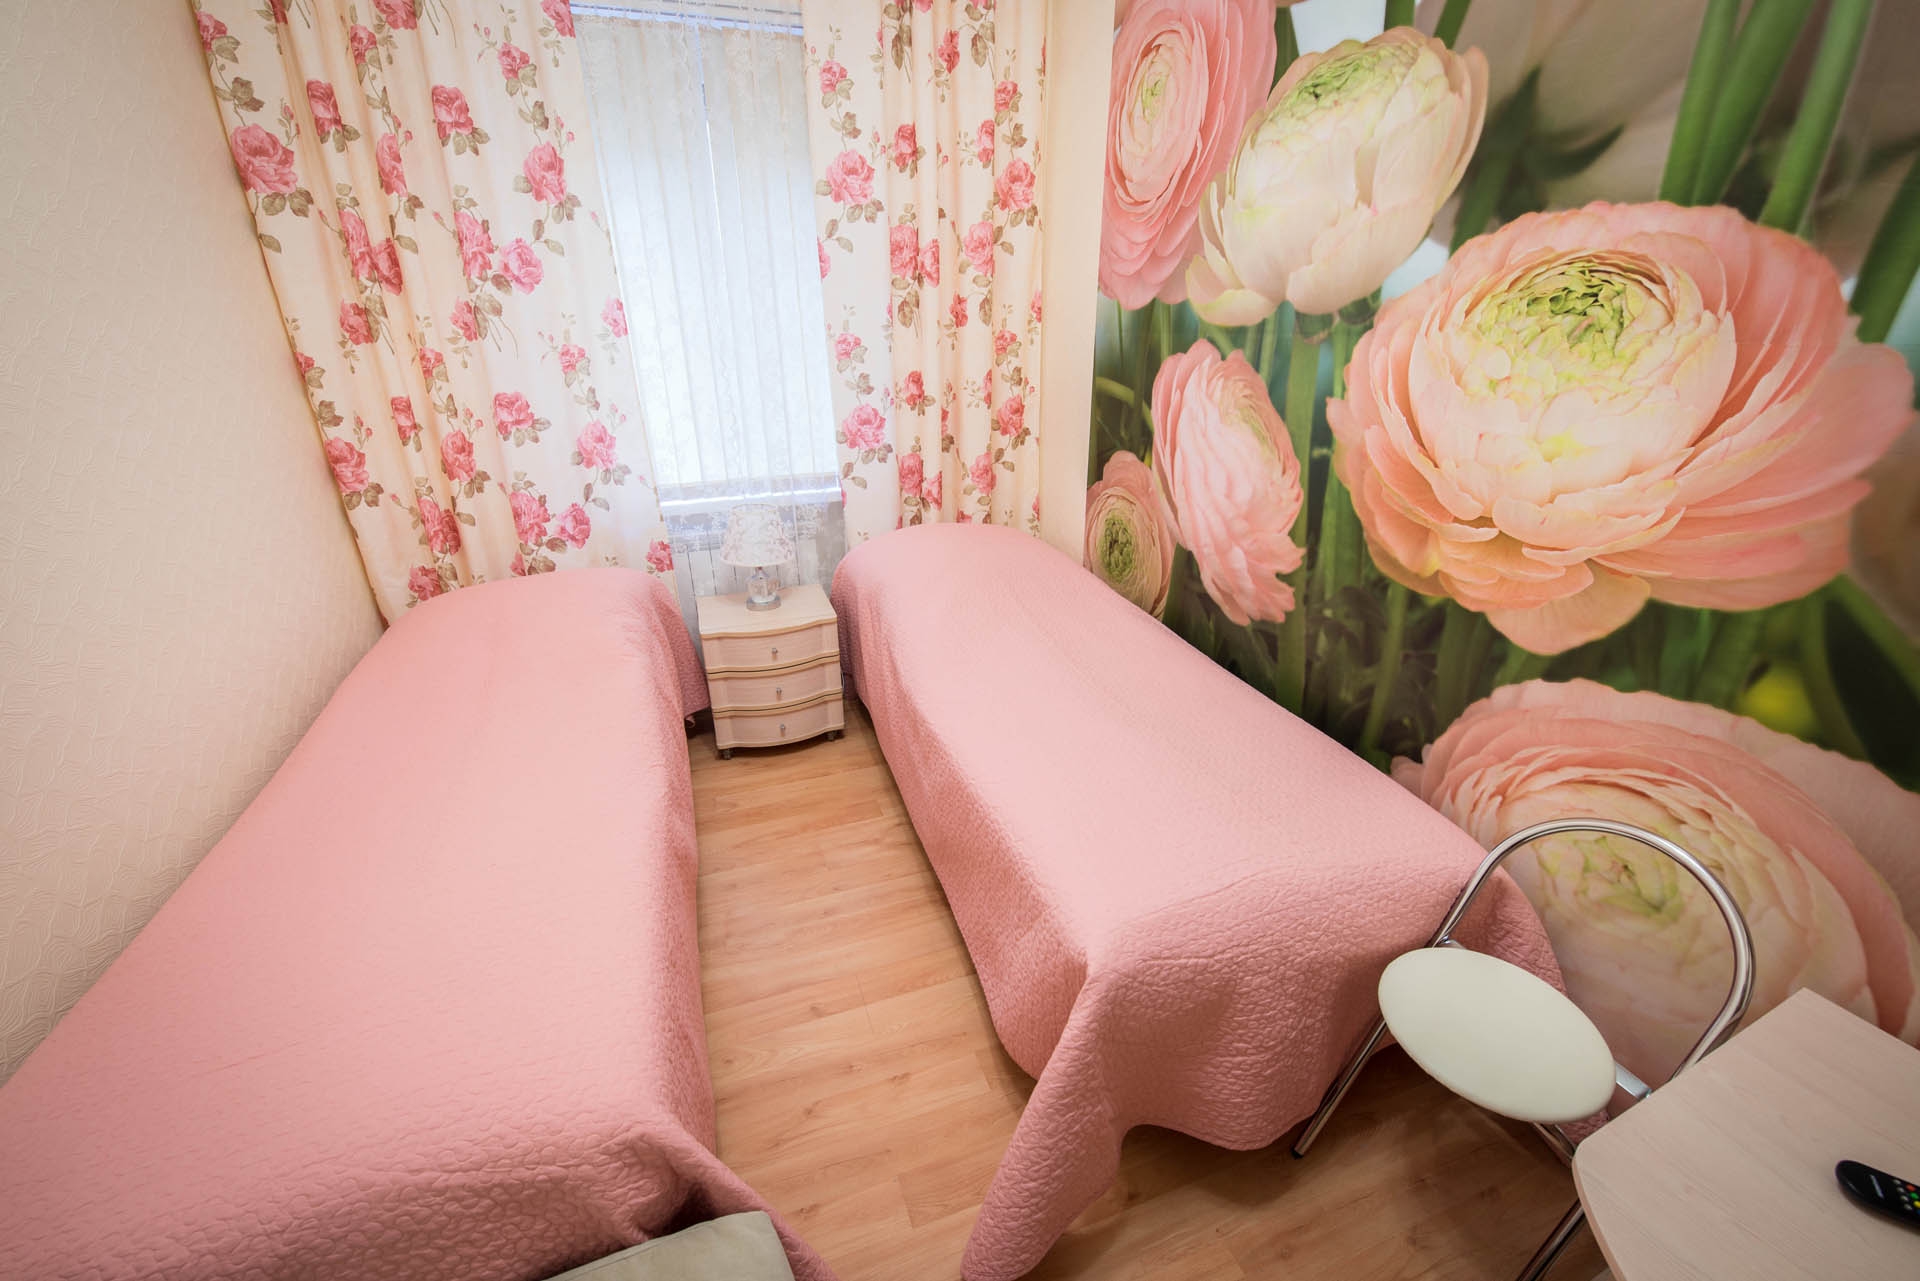 Самые популярные недорогие мини-отели в Санкт-Петербурге